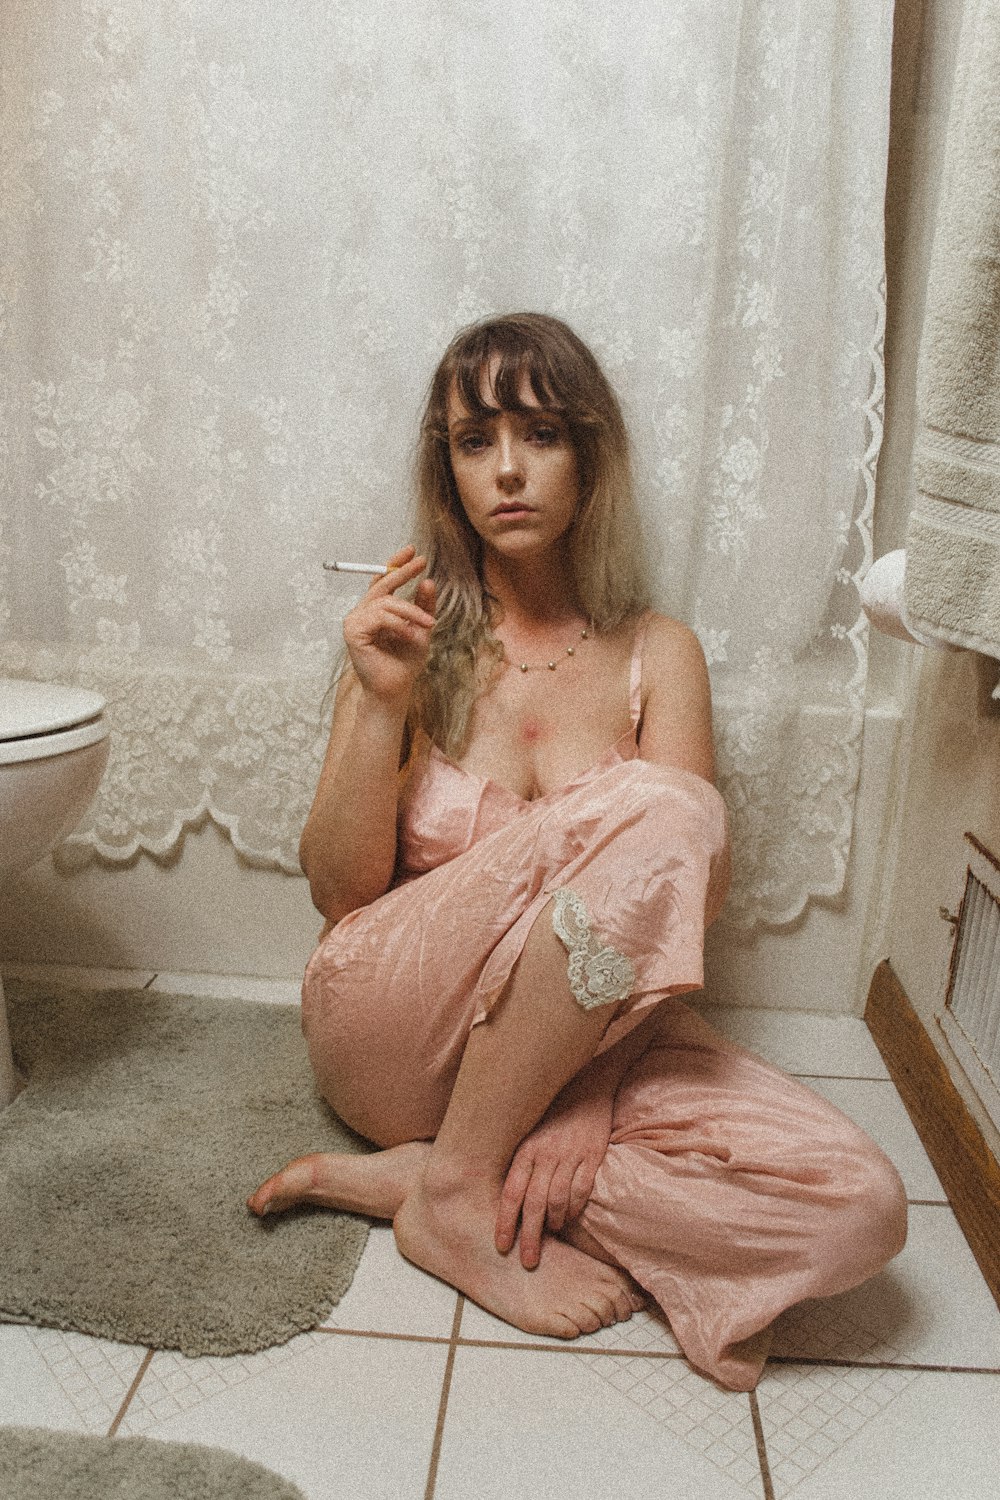 잠옷 바지를 입고 앉아 있는 여자가 화장실 안에서 담배를 피우고 있습니다